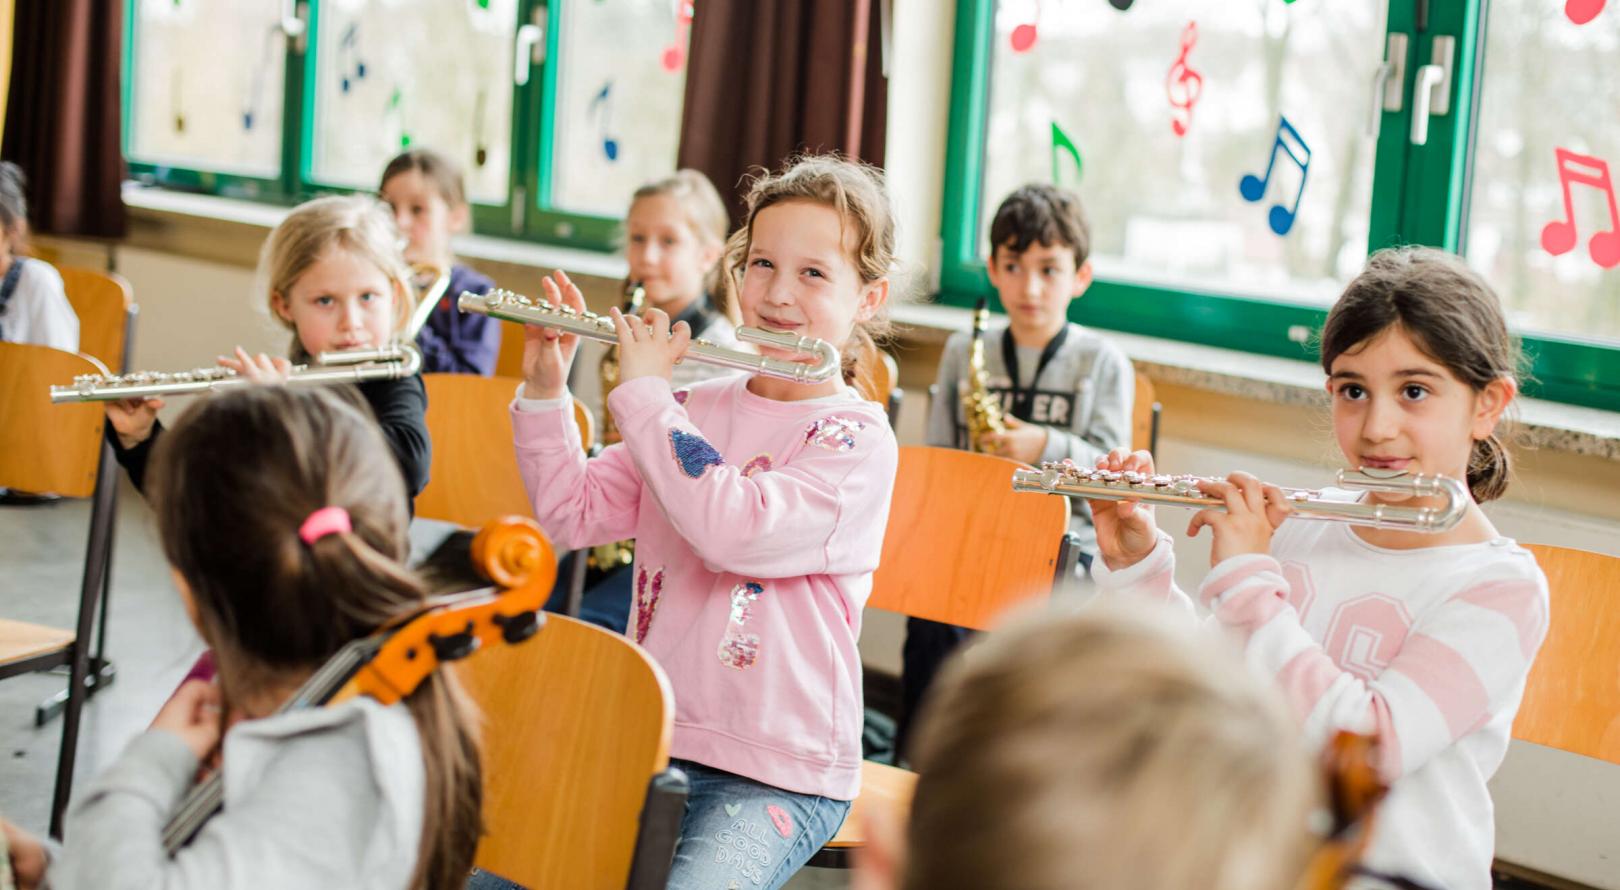 Kinder spielen gemeinsam im JeKits-Orchester auf ihren Instrumenten. Im Vordergrund des Fotos sind drei Mädchen mit ihren Kinder-Querflörten zu sehen.